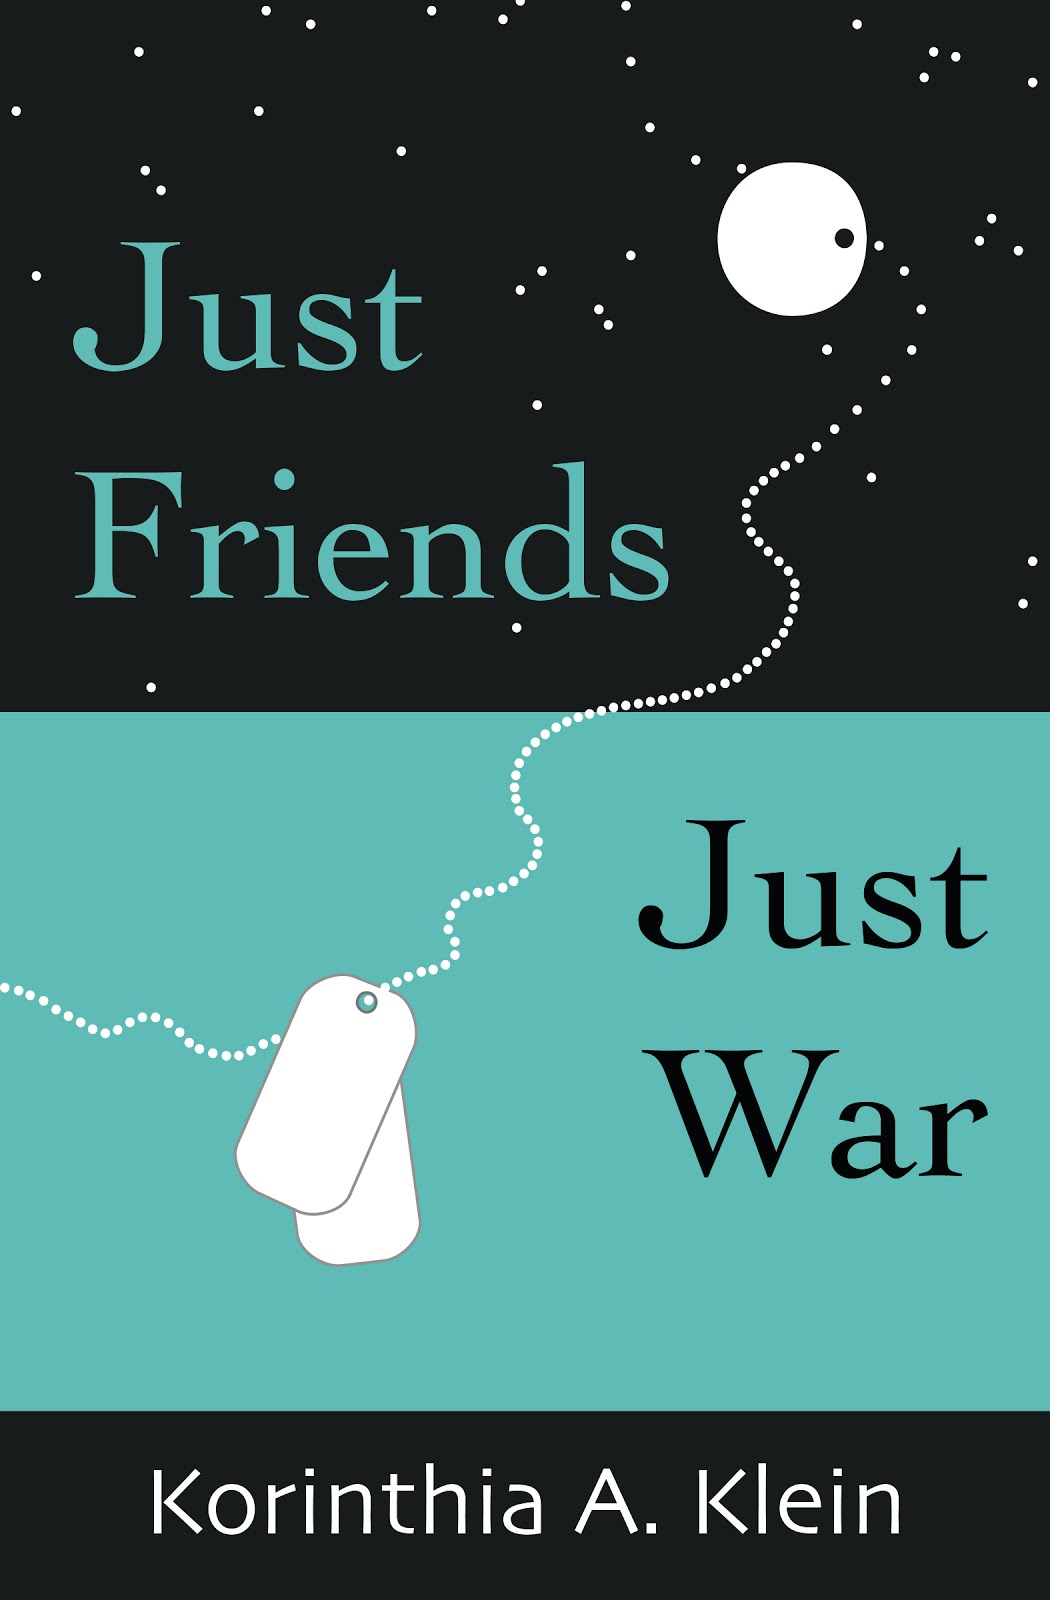 Just Friends, Just War